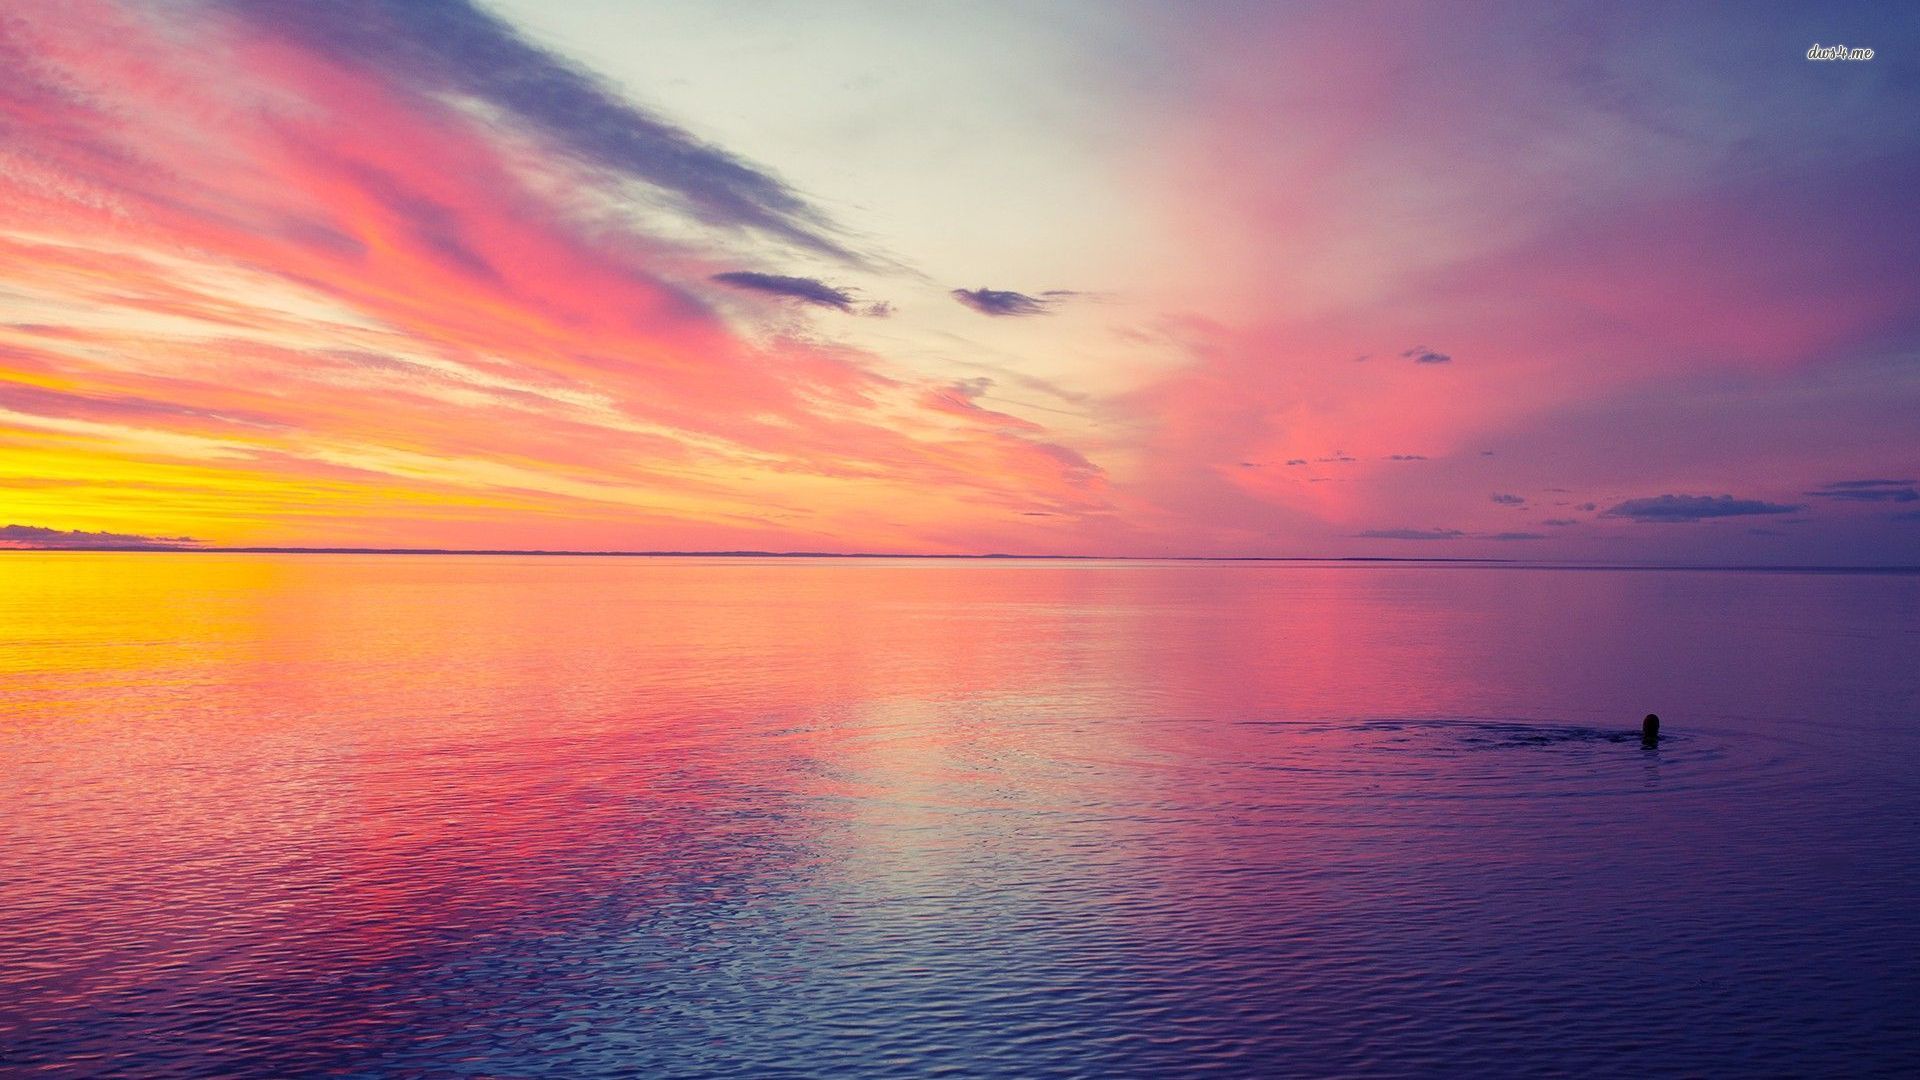 Pink Sunset Beach Images  Free Download on Freepik